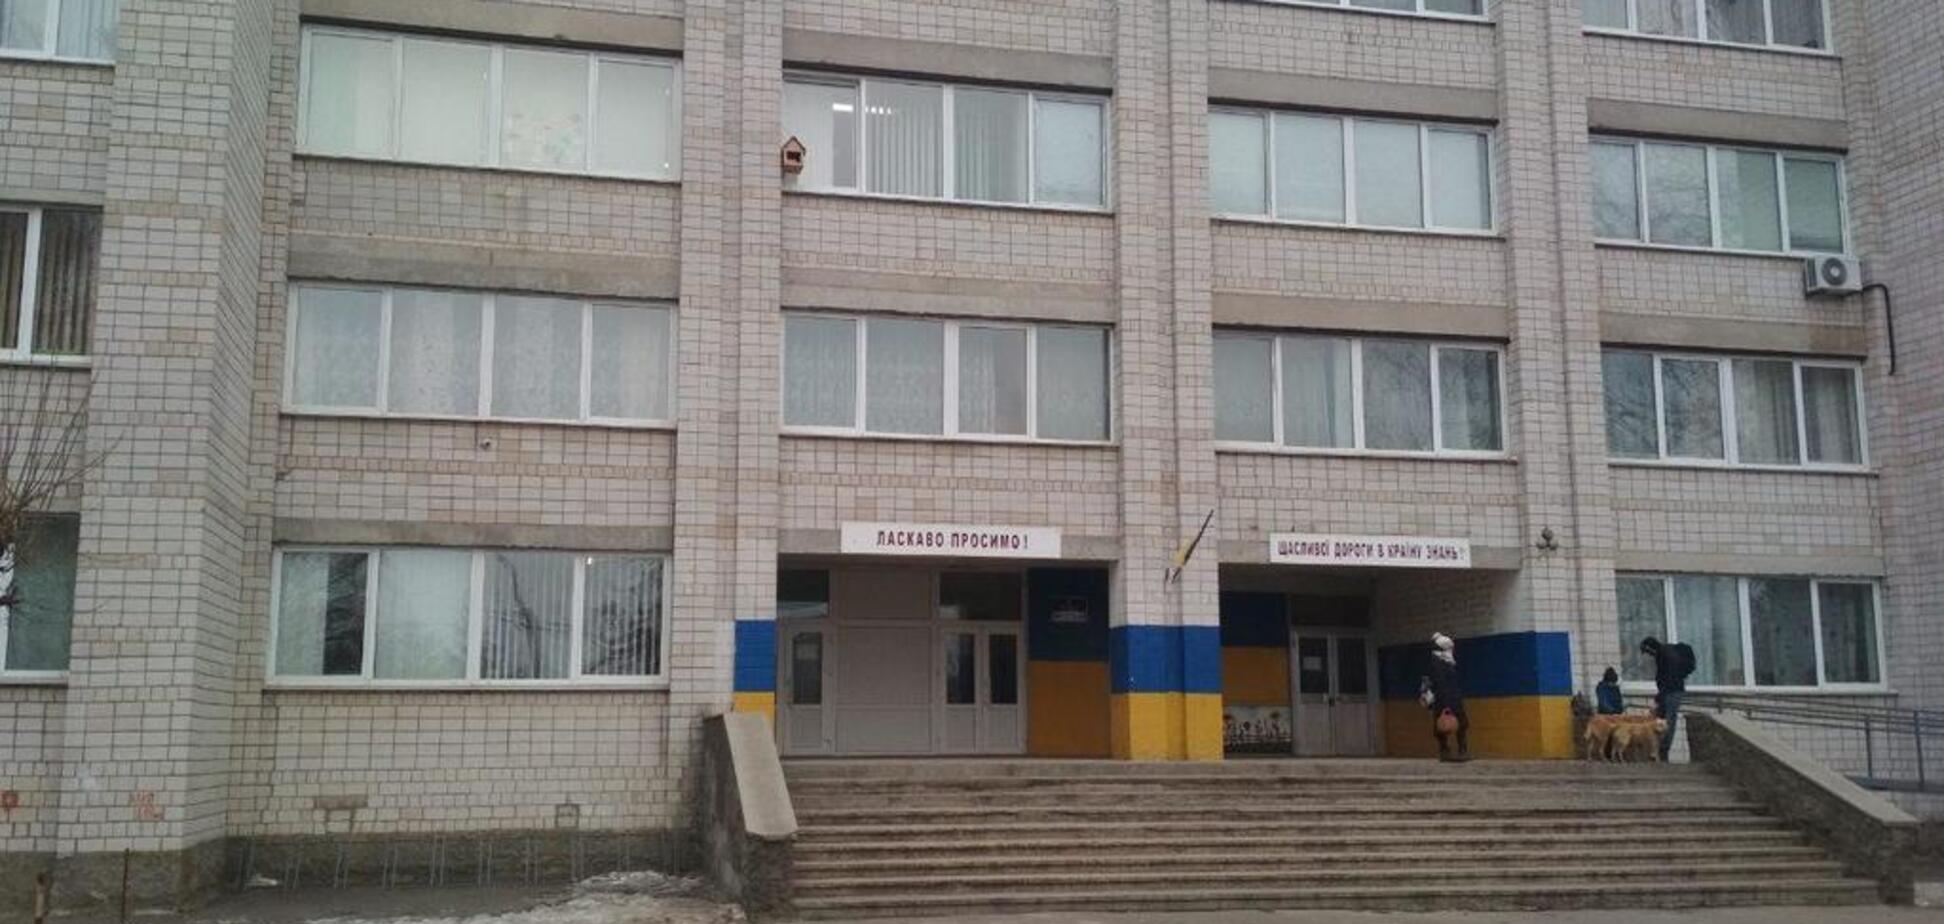 Під Києвом у двох школах розпорошили газ: дітей евакуювали